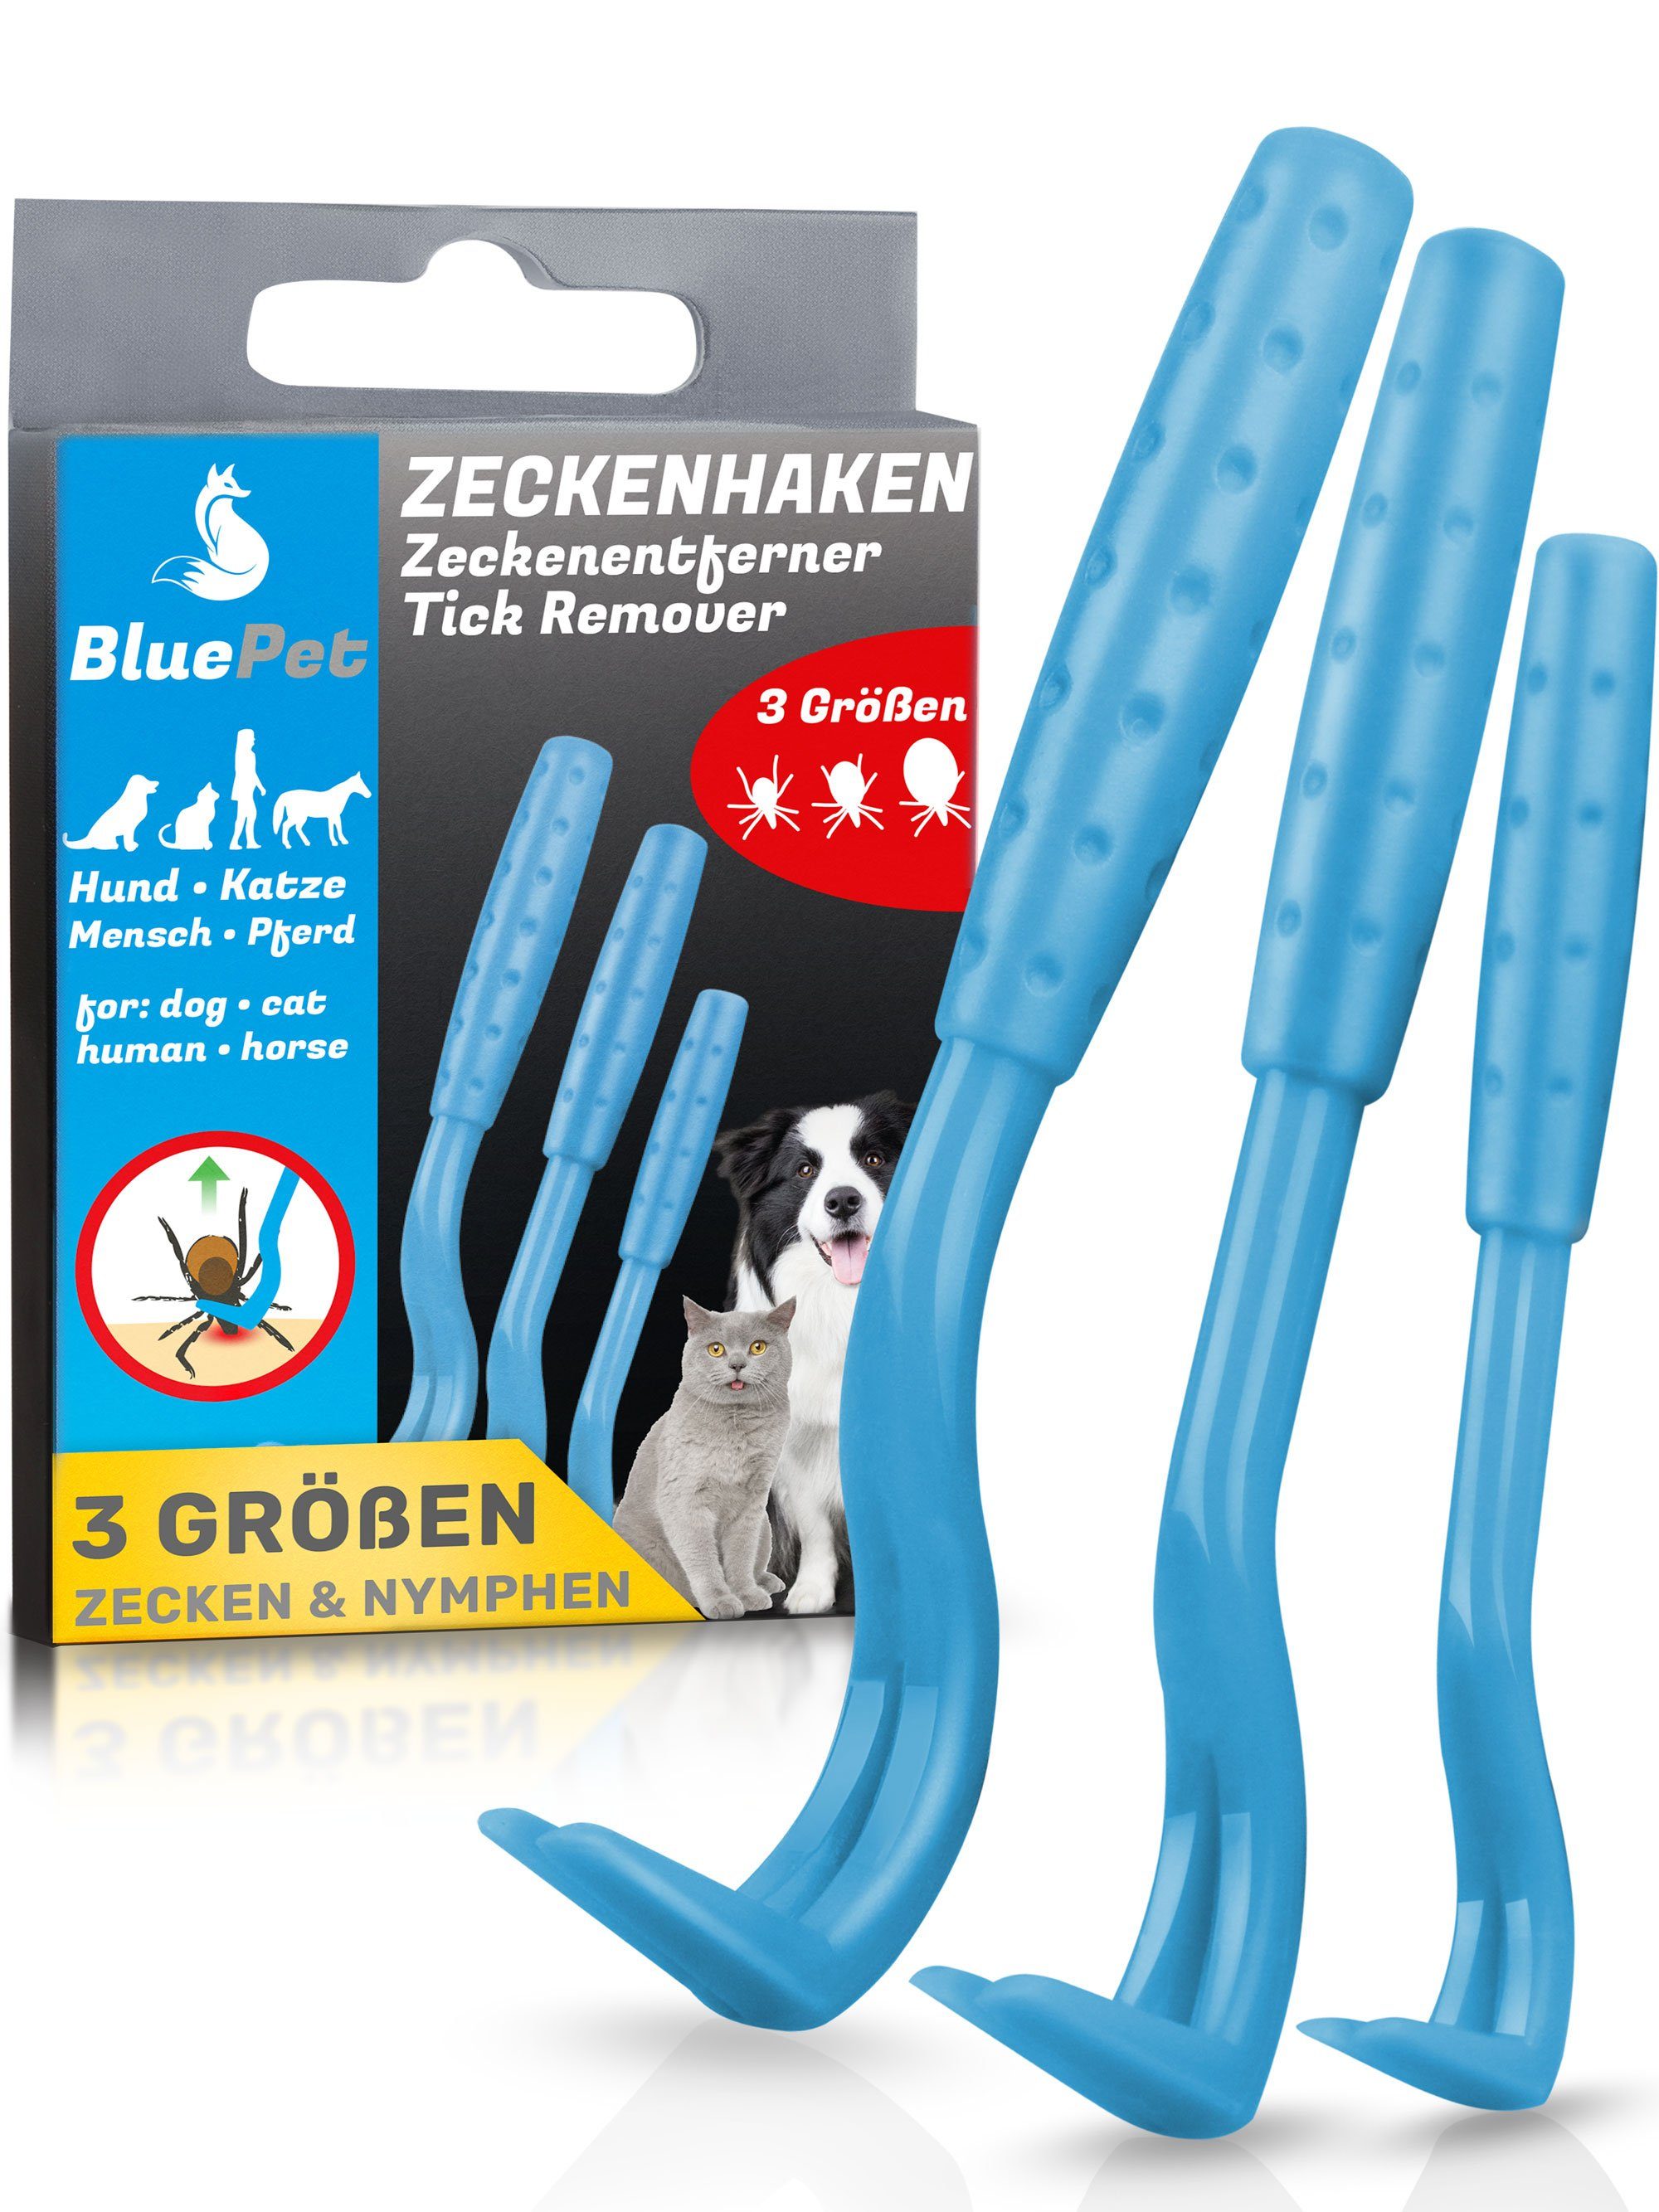 BluePet Zeckenpinzette "Tick-Trick" Zeckenentferner, Tiere Zeckenentfernung Menschen Set Blau für Zeckenhaken und 3er